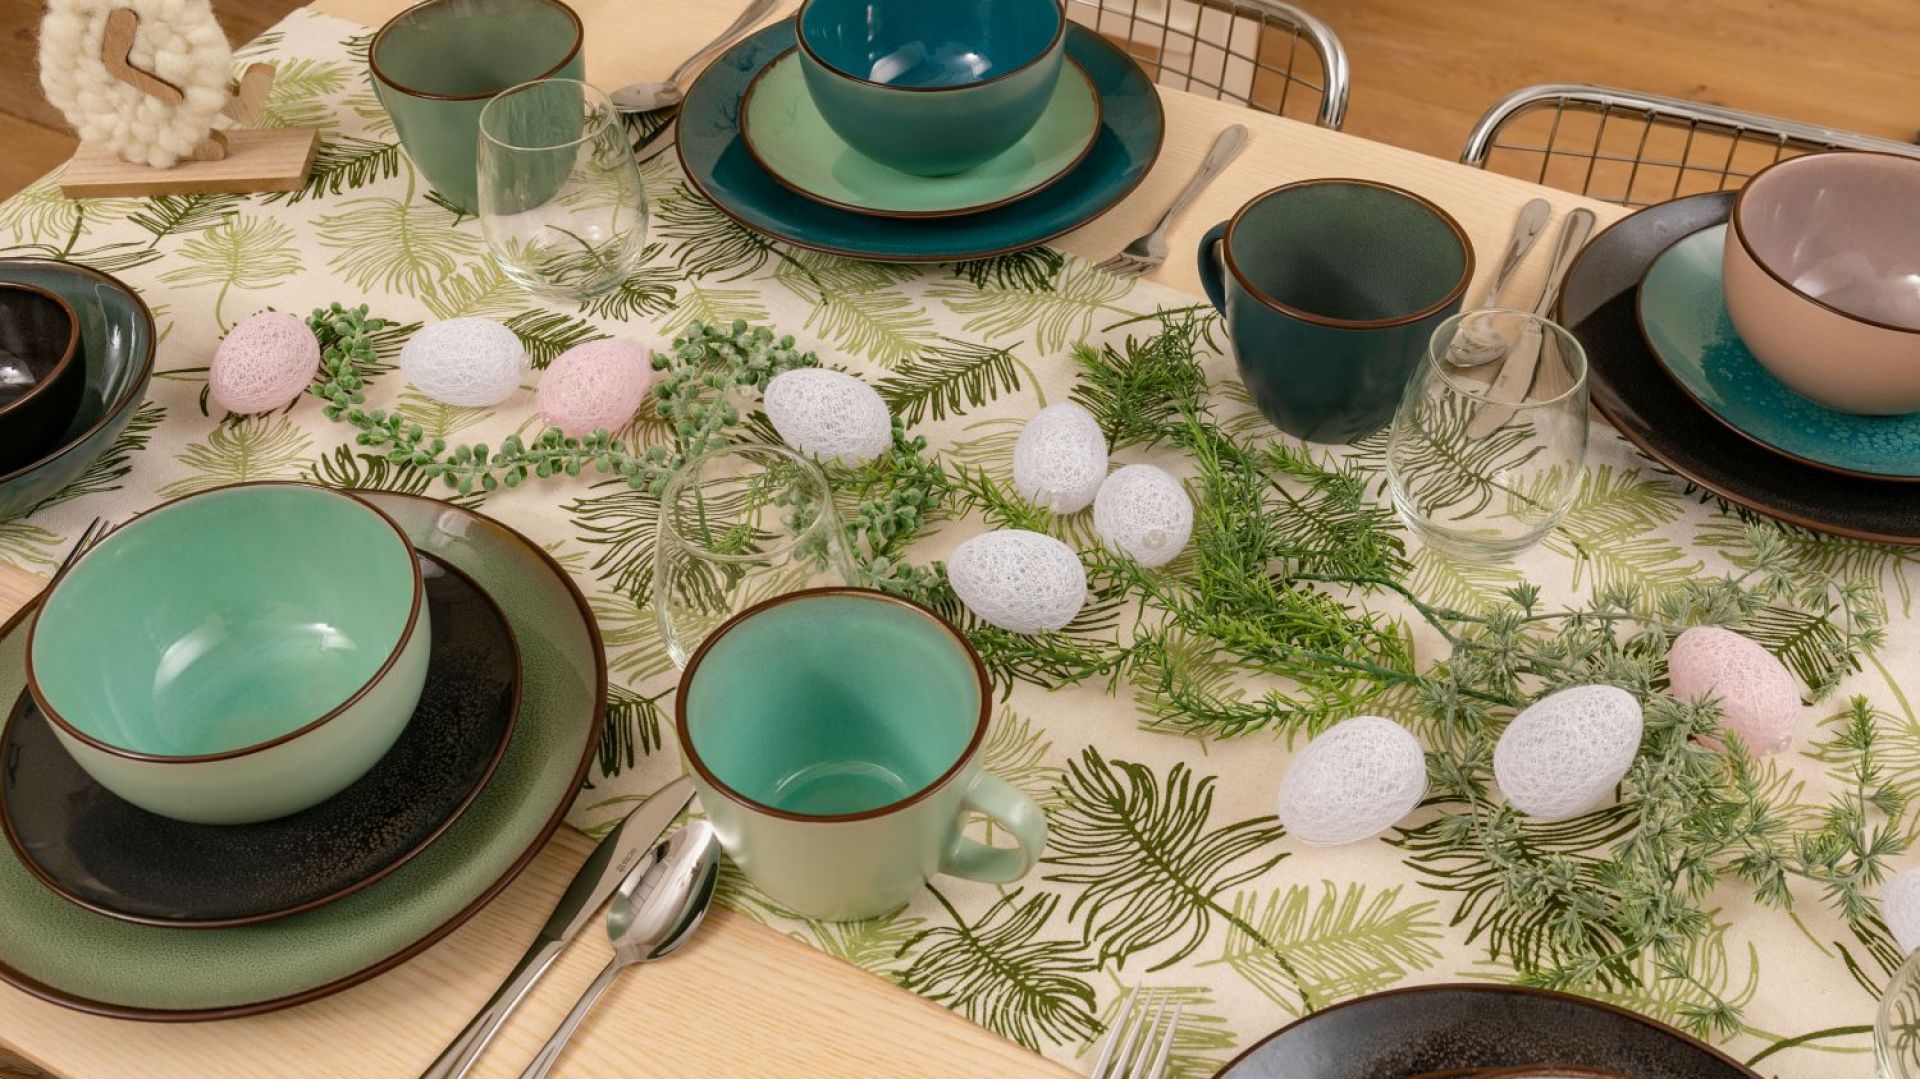 Wielkanocny stół - zobacz wiosenne inspiracje